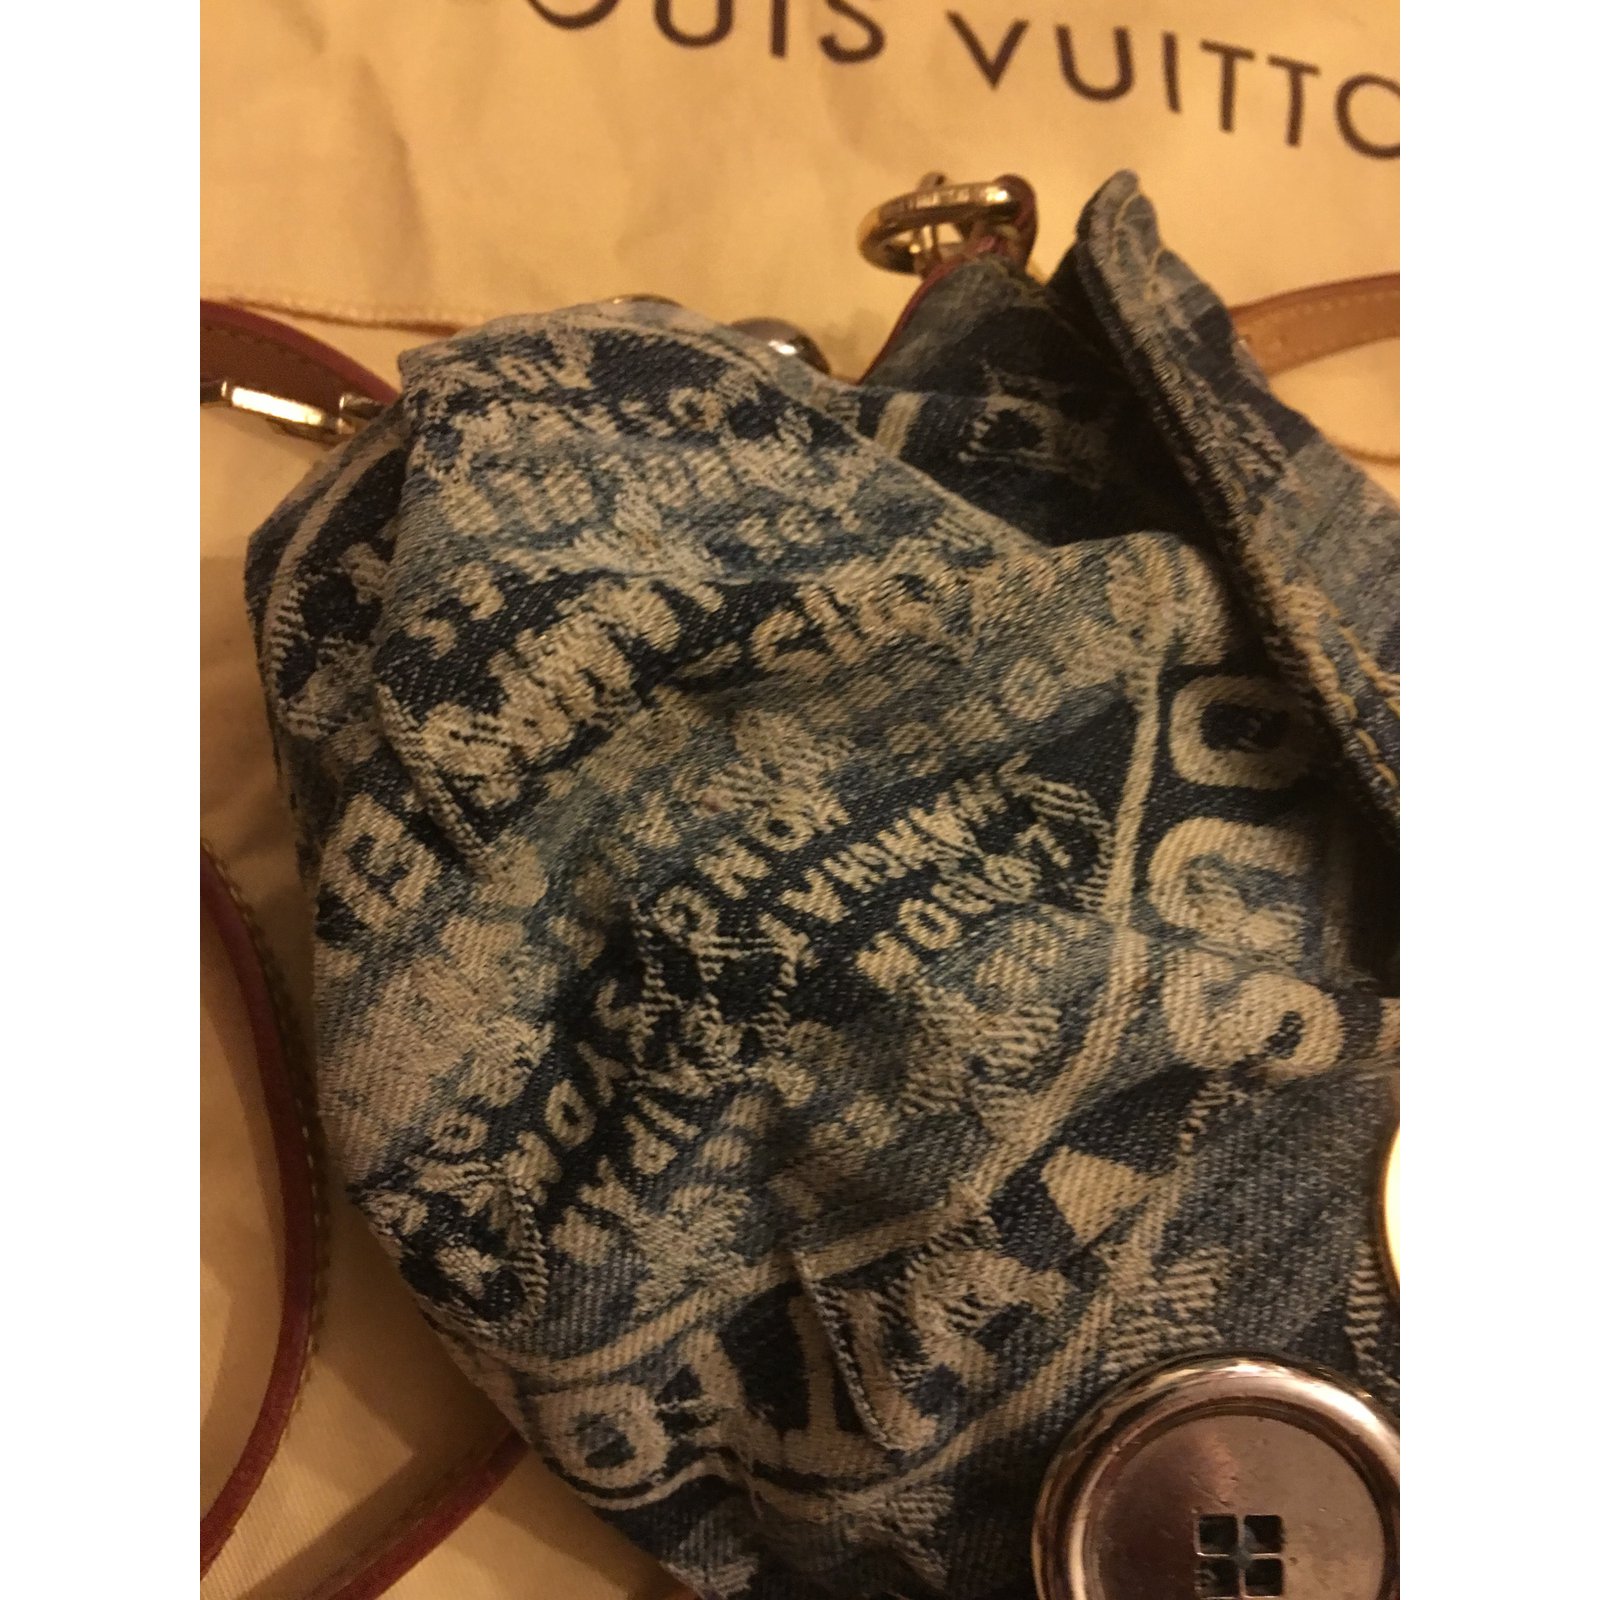 Vintage Louis Vuitton Pleaty Blue Monogram Denim Bag -  Canada